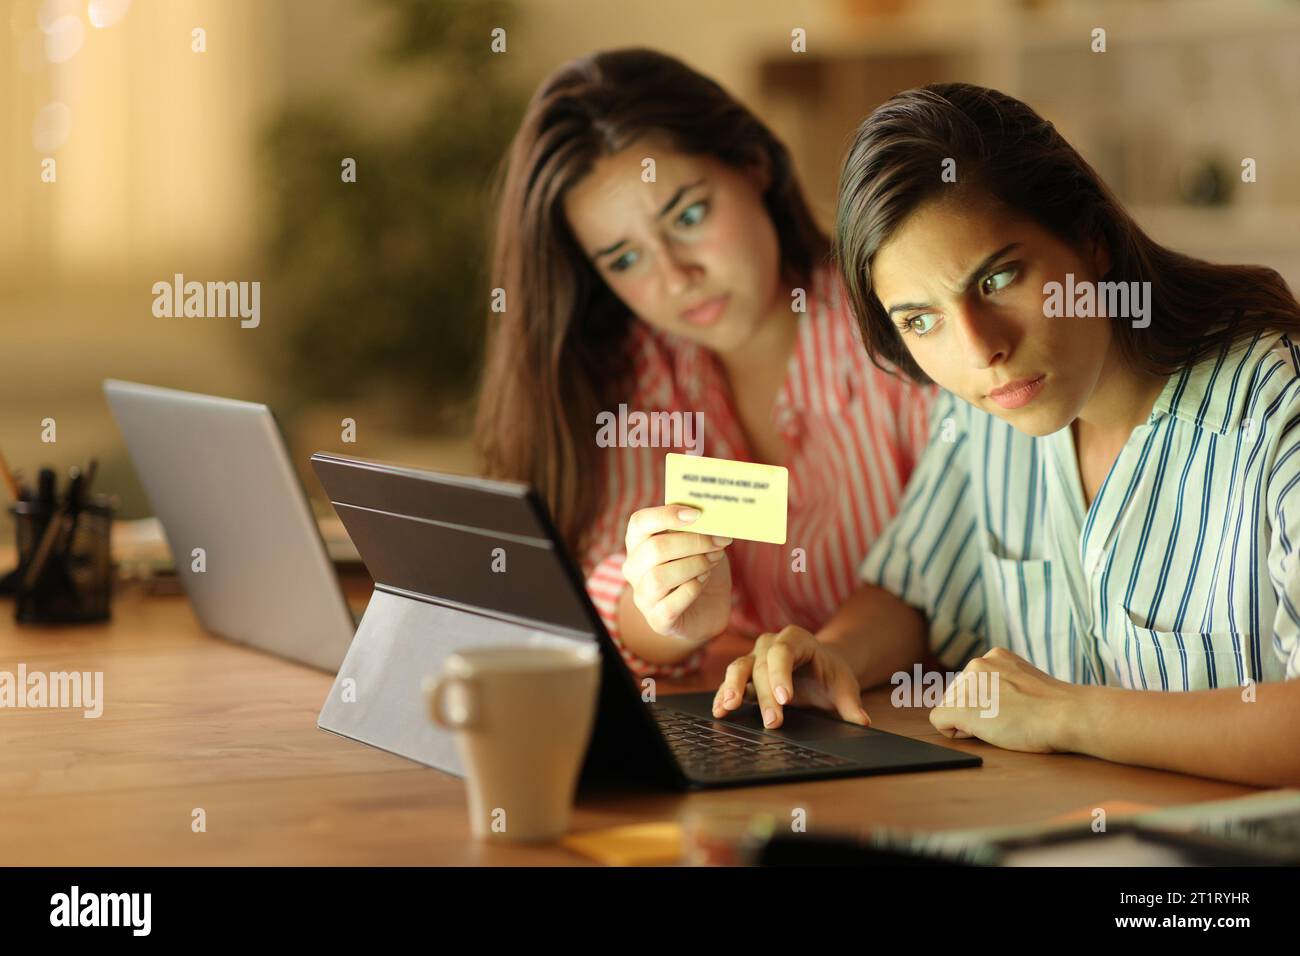 Due tele worker sospetti che acquistano online con carta di credito e notebook la notte a casa Foto Stock